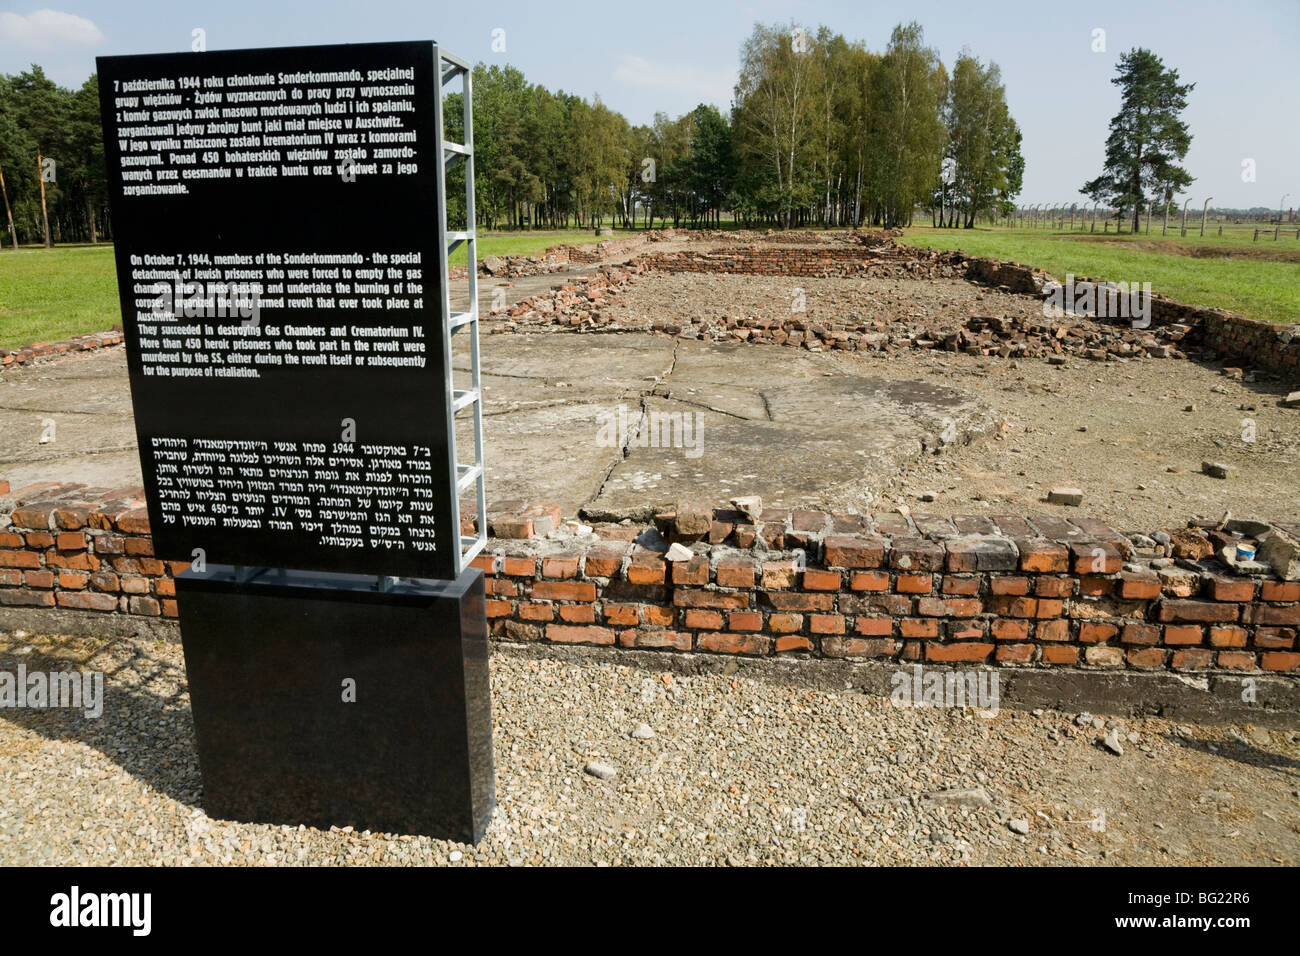 Avis d'information / signe / memorial près des chambres à gaz et les crématoriums / IV. Auschwitz II - Birkenau camp de concentration Nazi, Pologne Banque D'Images